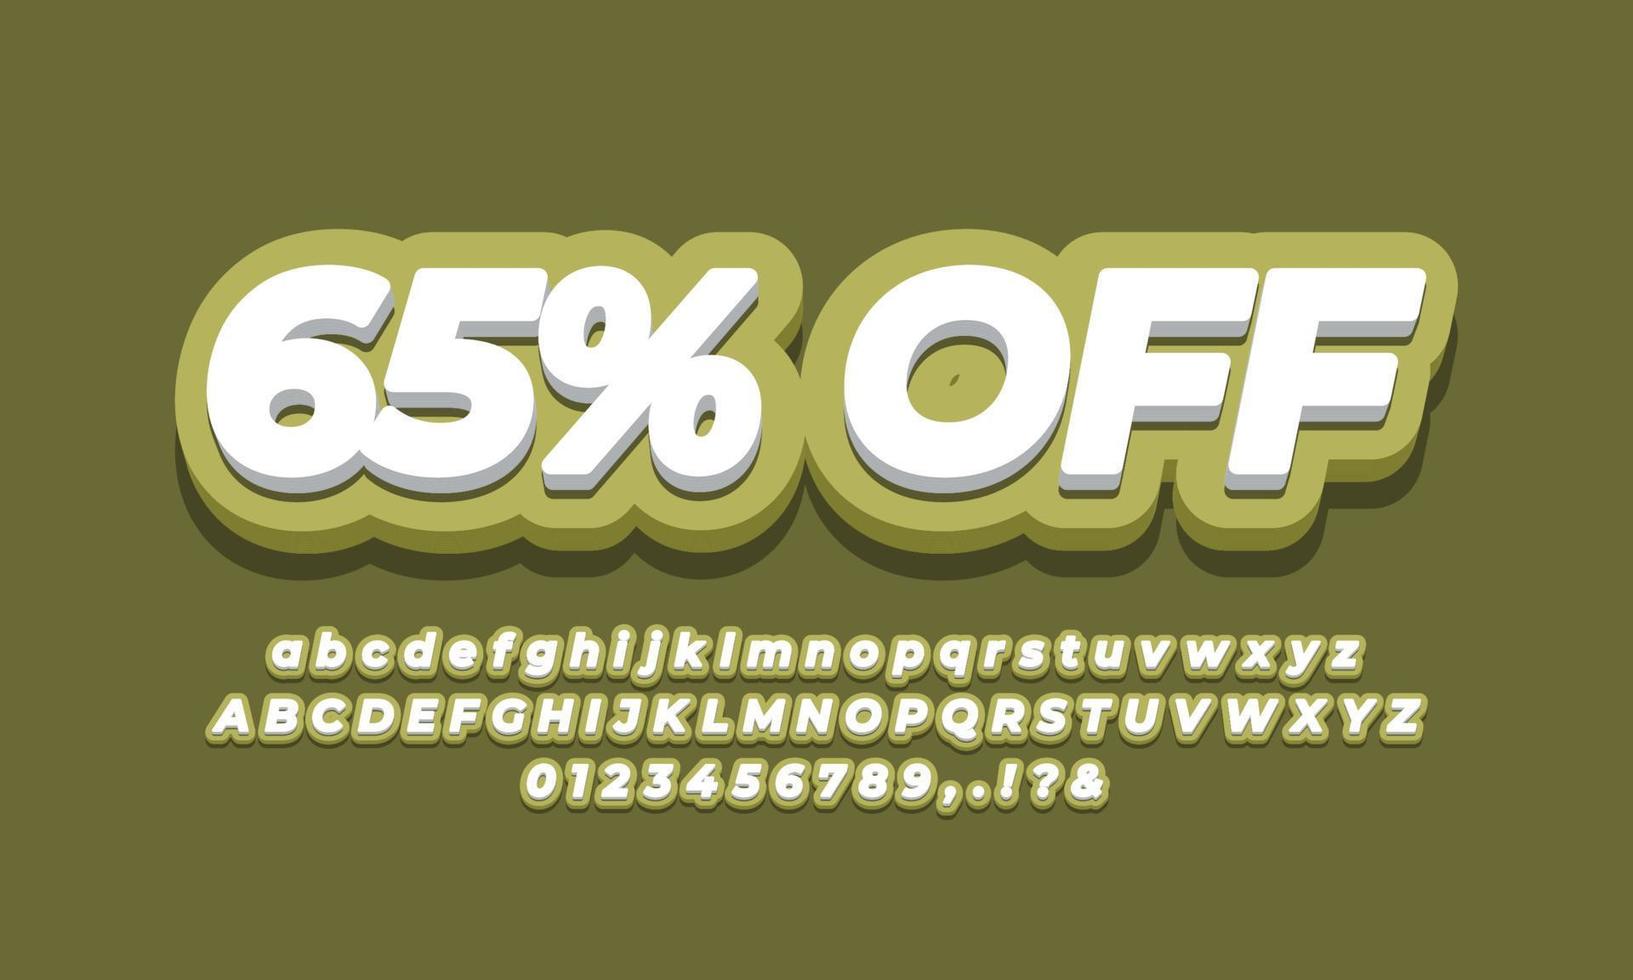 65 percent off sixty five percent sale discount promotion text  3d green design vector